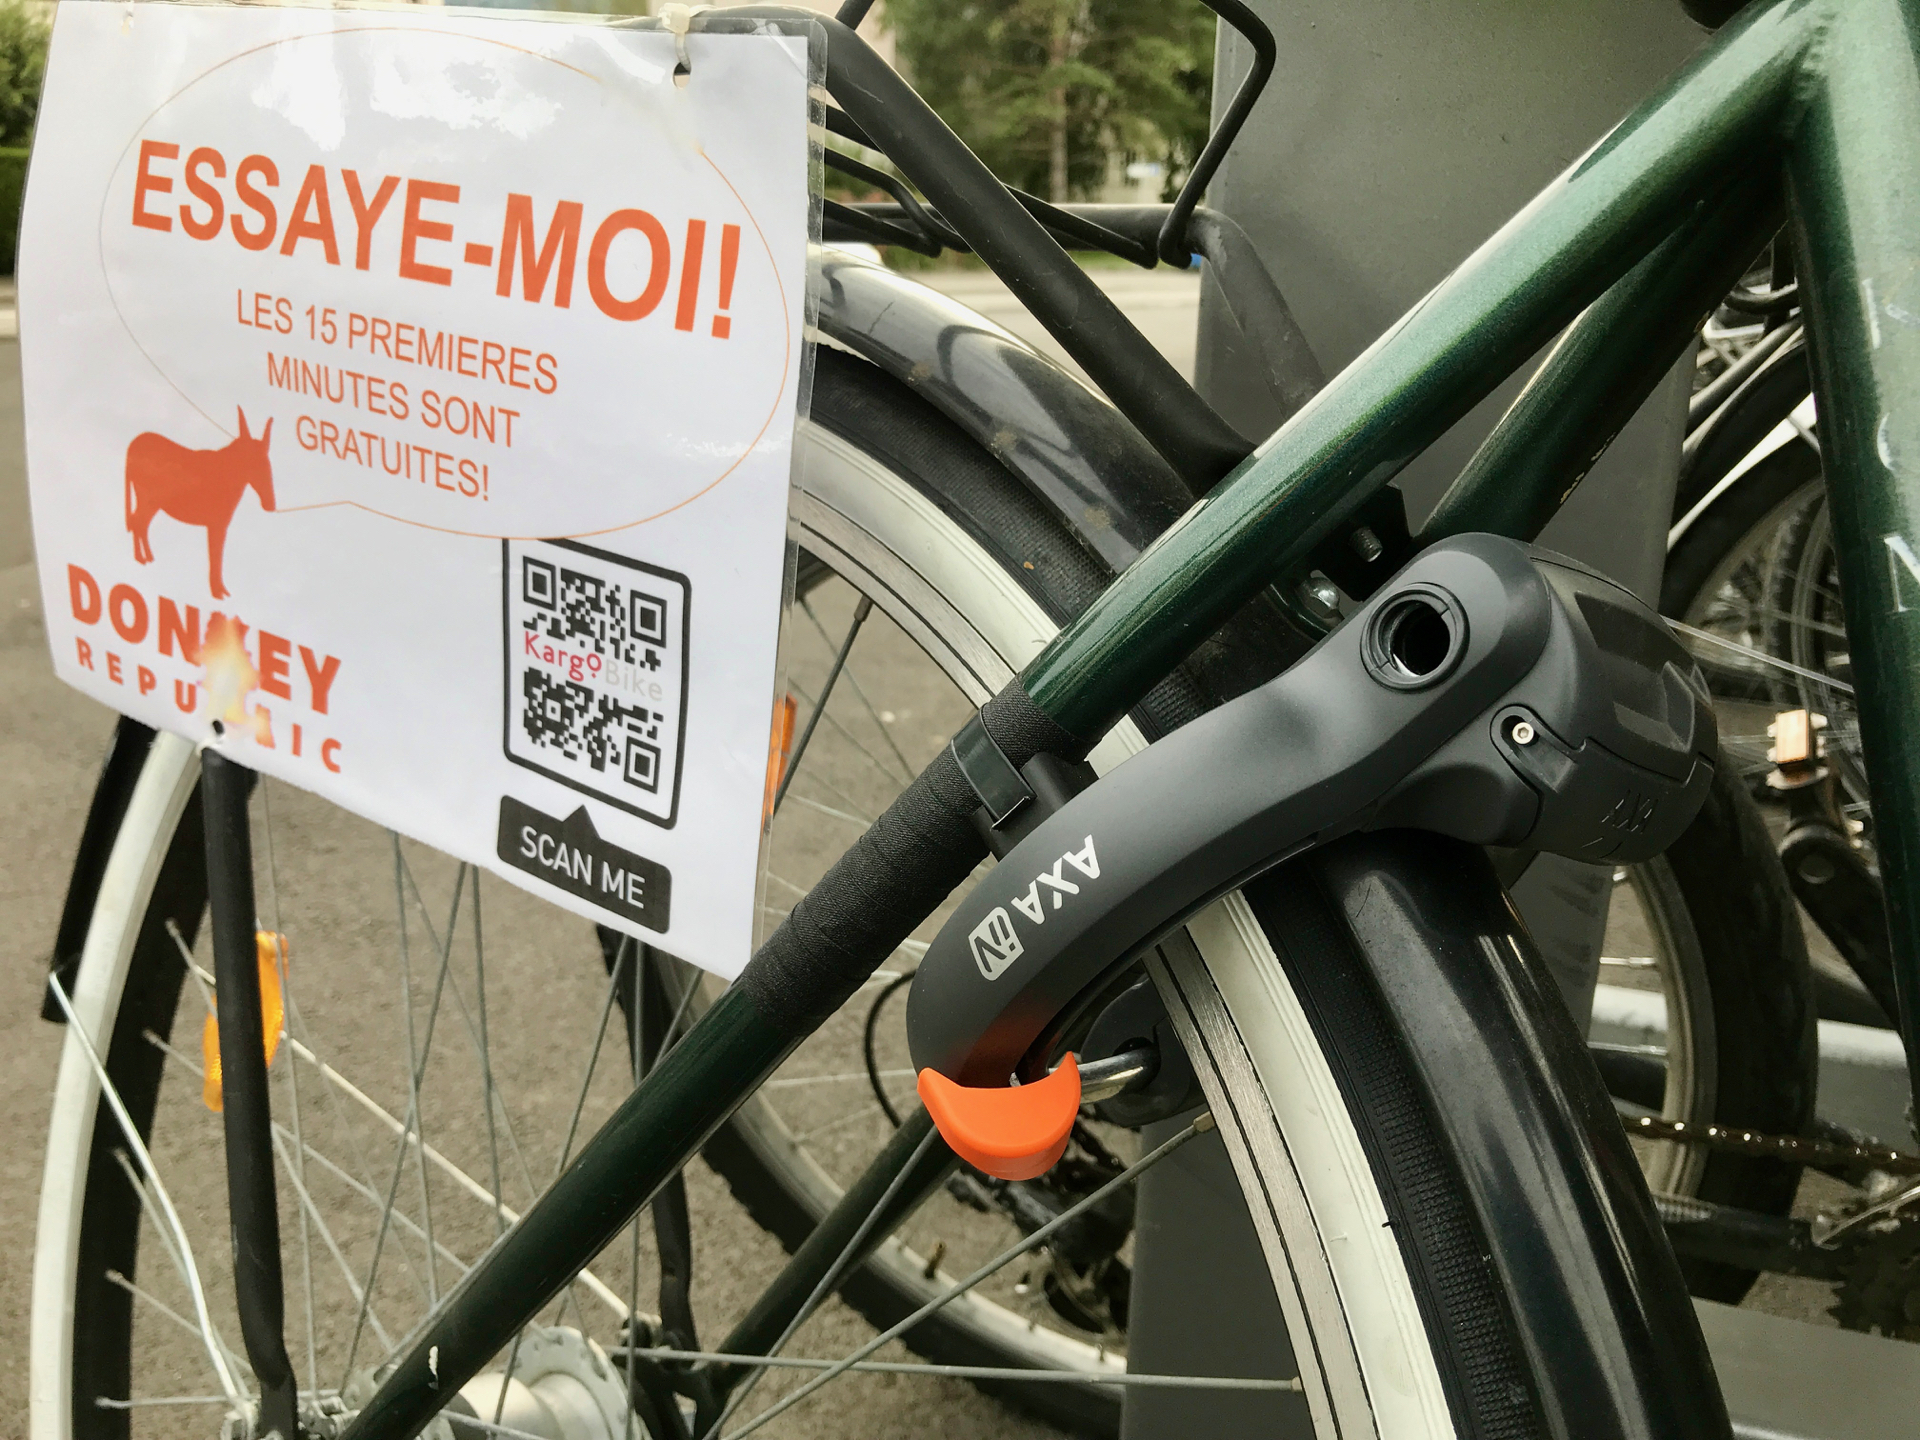 La guerre du vélopartage aura-t-elle lieu en Valais (aussi) ?